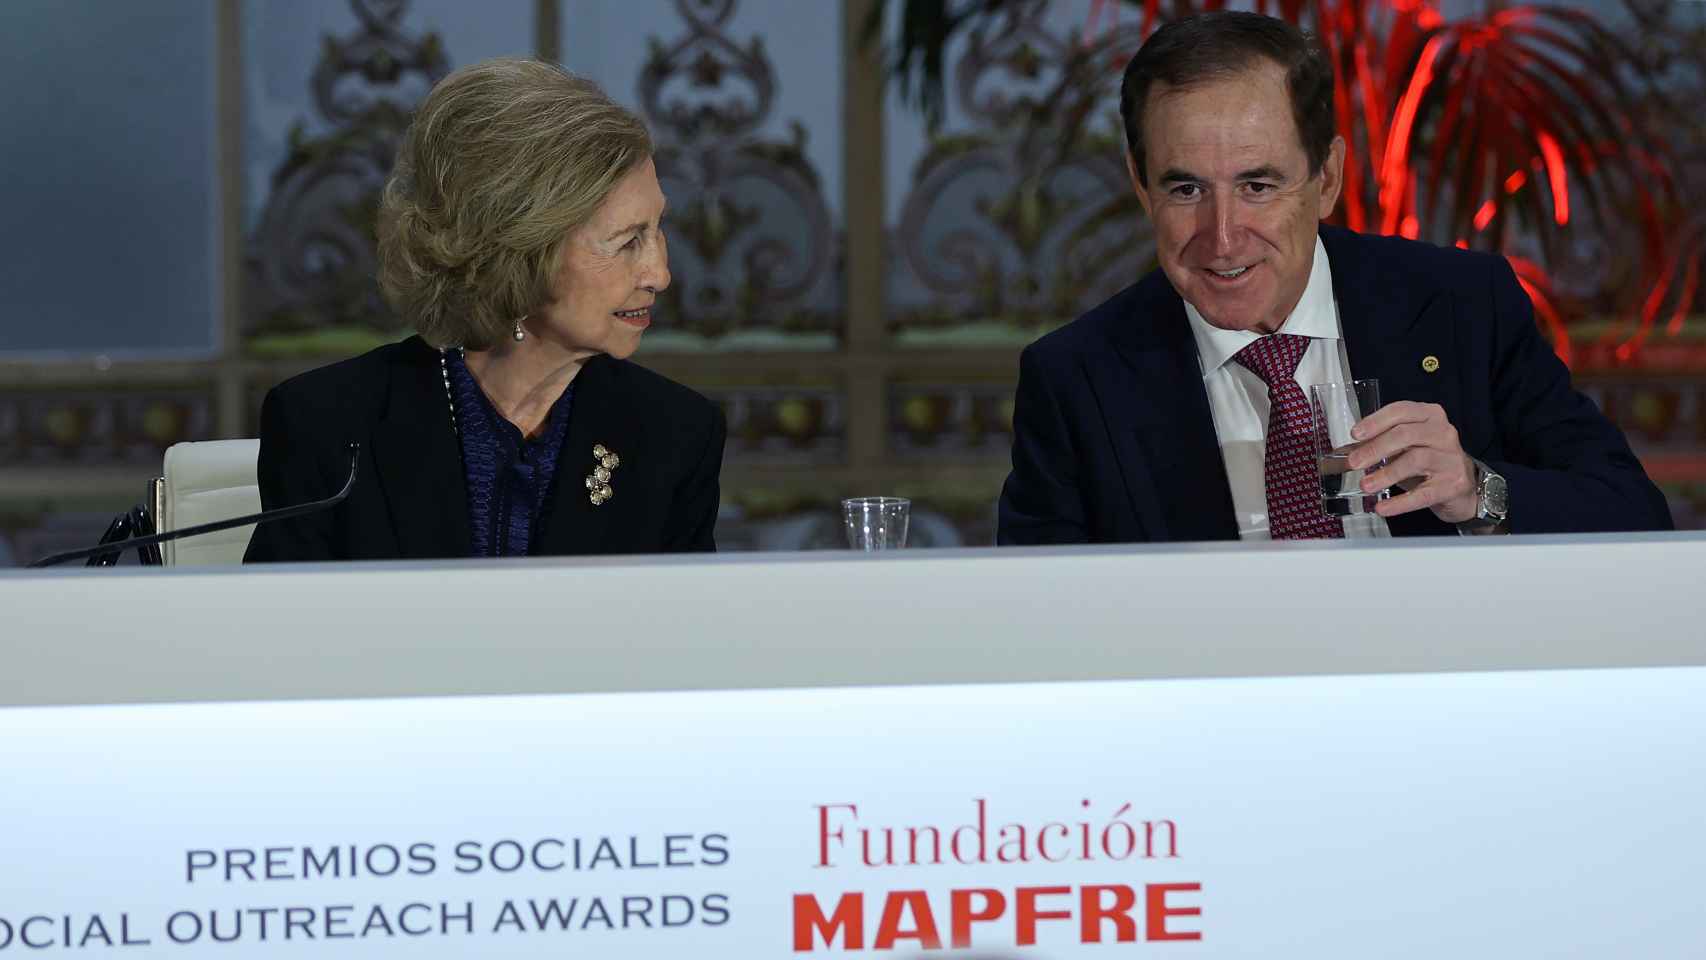 La reina Sofía junto a Antonio Huertas, presidente de Mapfre, durante la entrega de los Premios Sociales Fundación MAPFRE 2022.